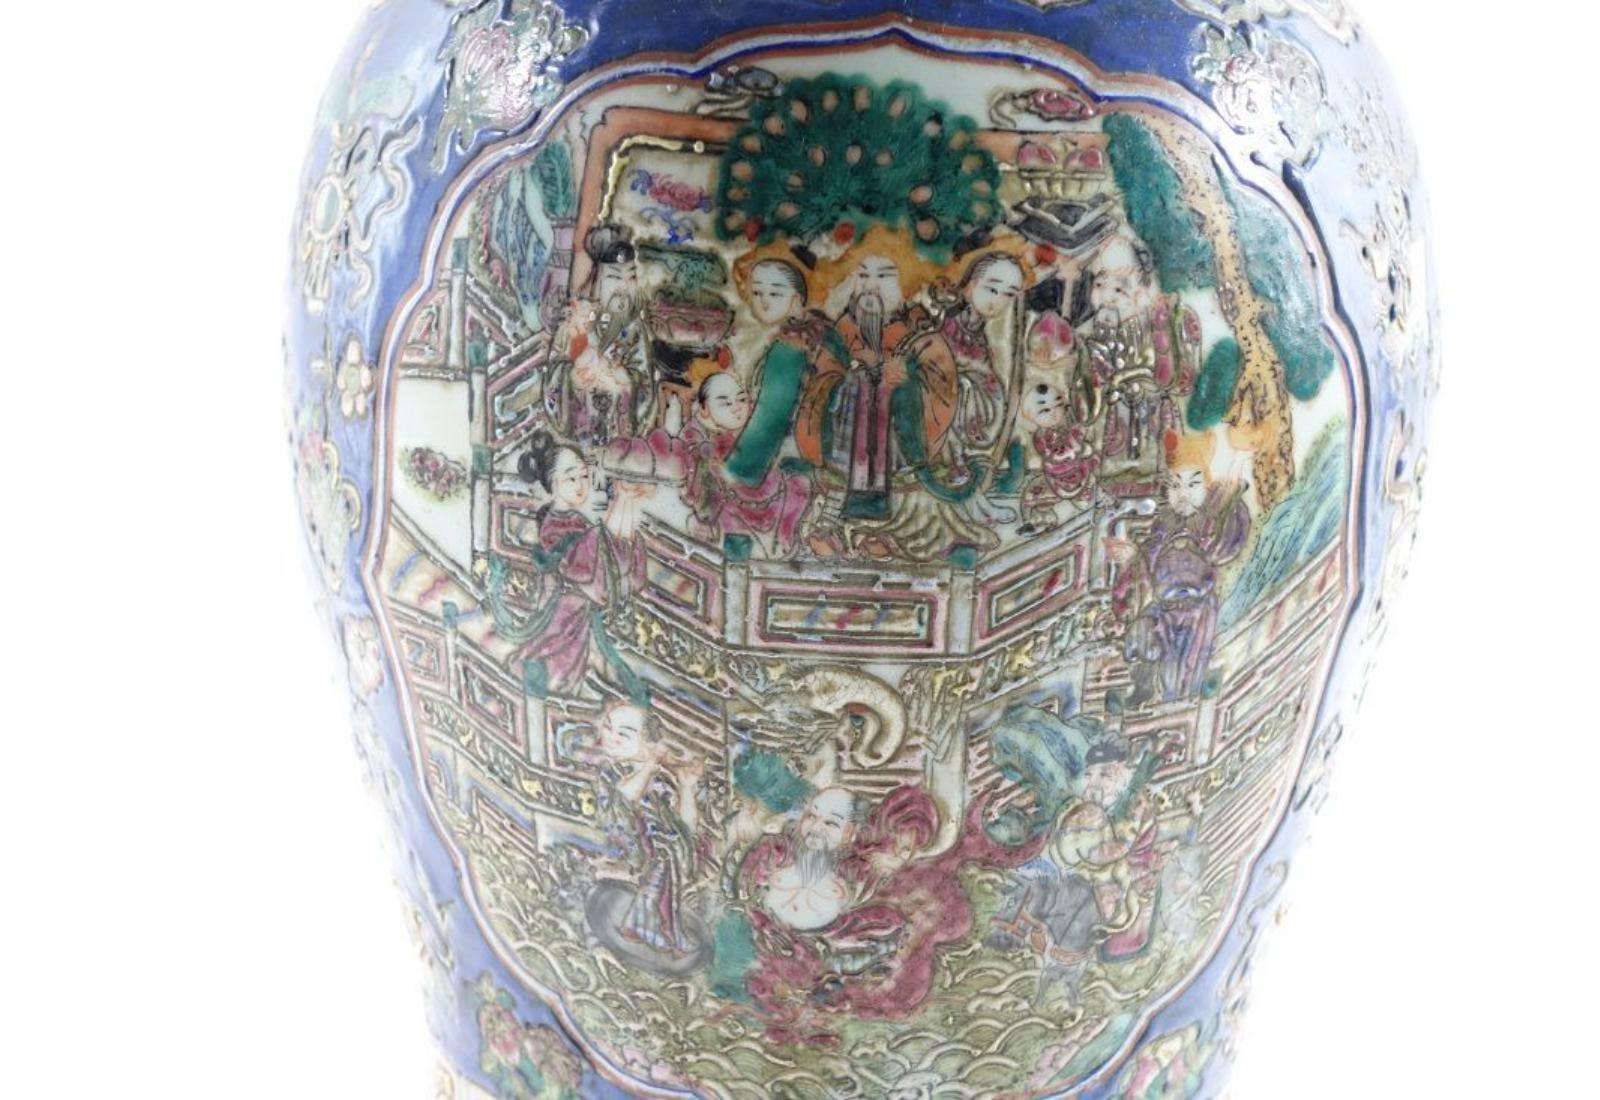 Ein Paar antiker chinesischer Porzellanurnen mit sehr fein gemalten Details auf den Urnen. Es hat eine Vielzahl von Farben, vor allem ein tiefes leuchtendes Blau, Gelb und andere helle Farben. 22